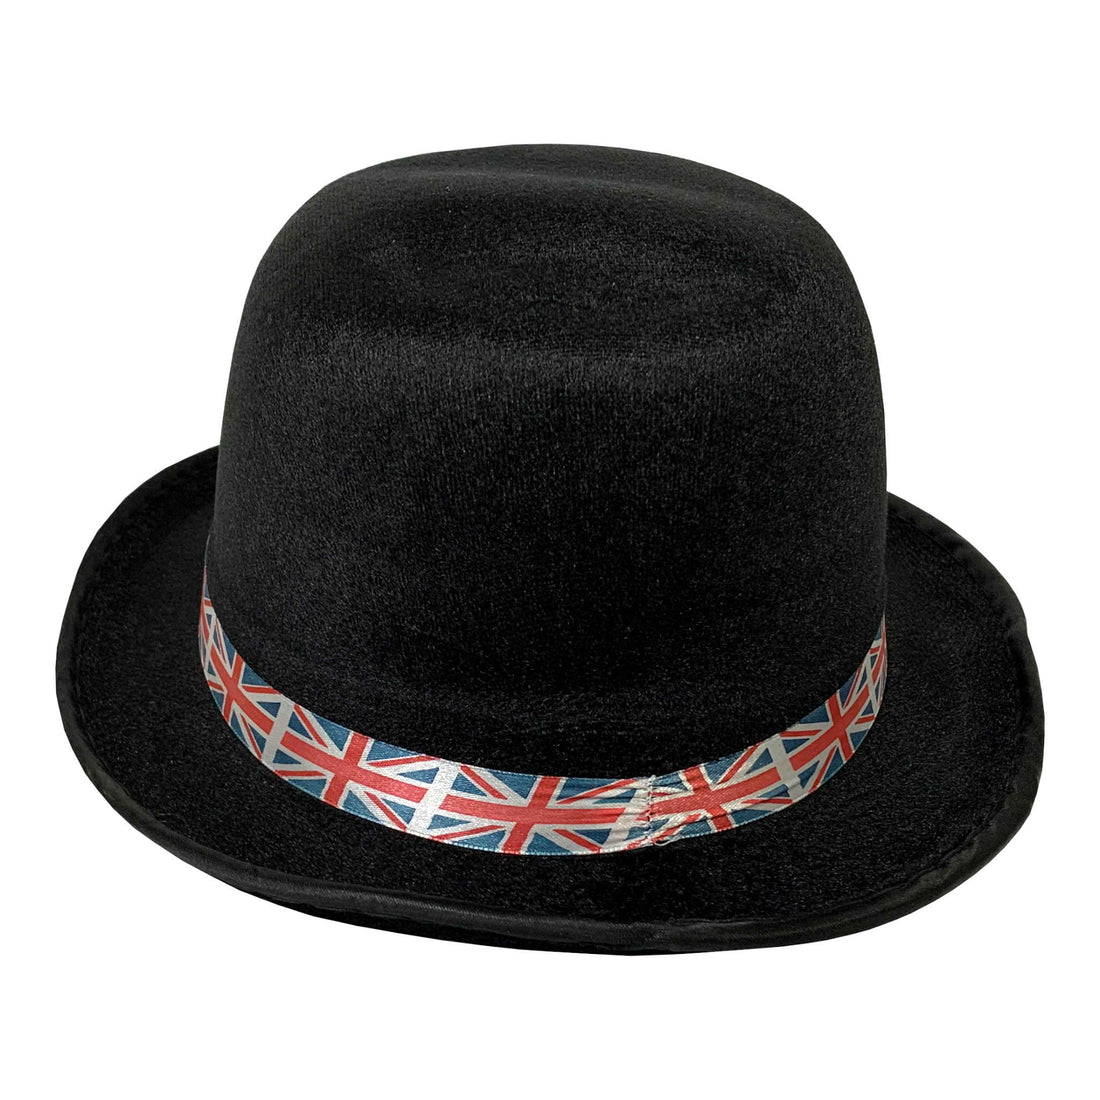 Union Jack Bowler Hat | Adult Size | Black